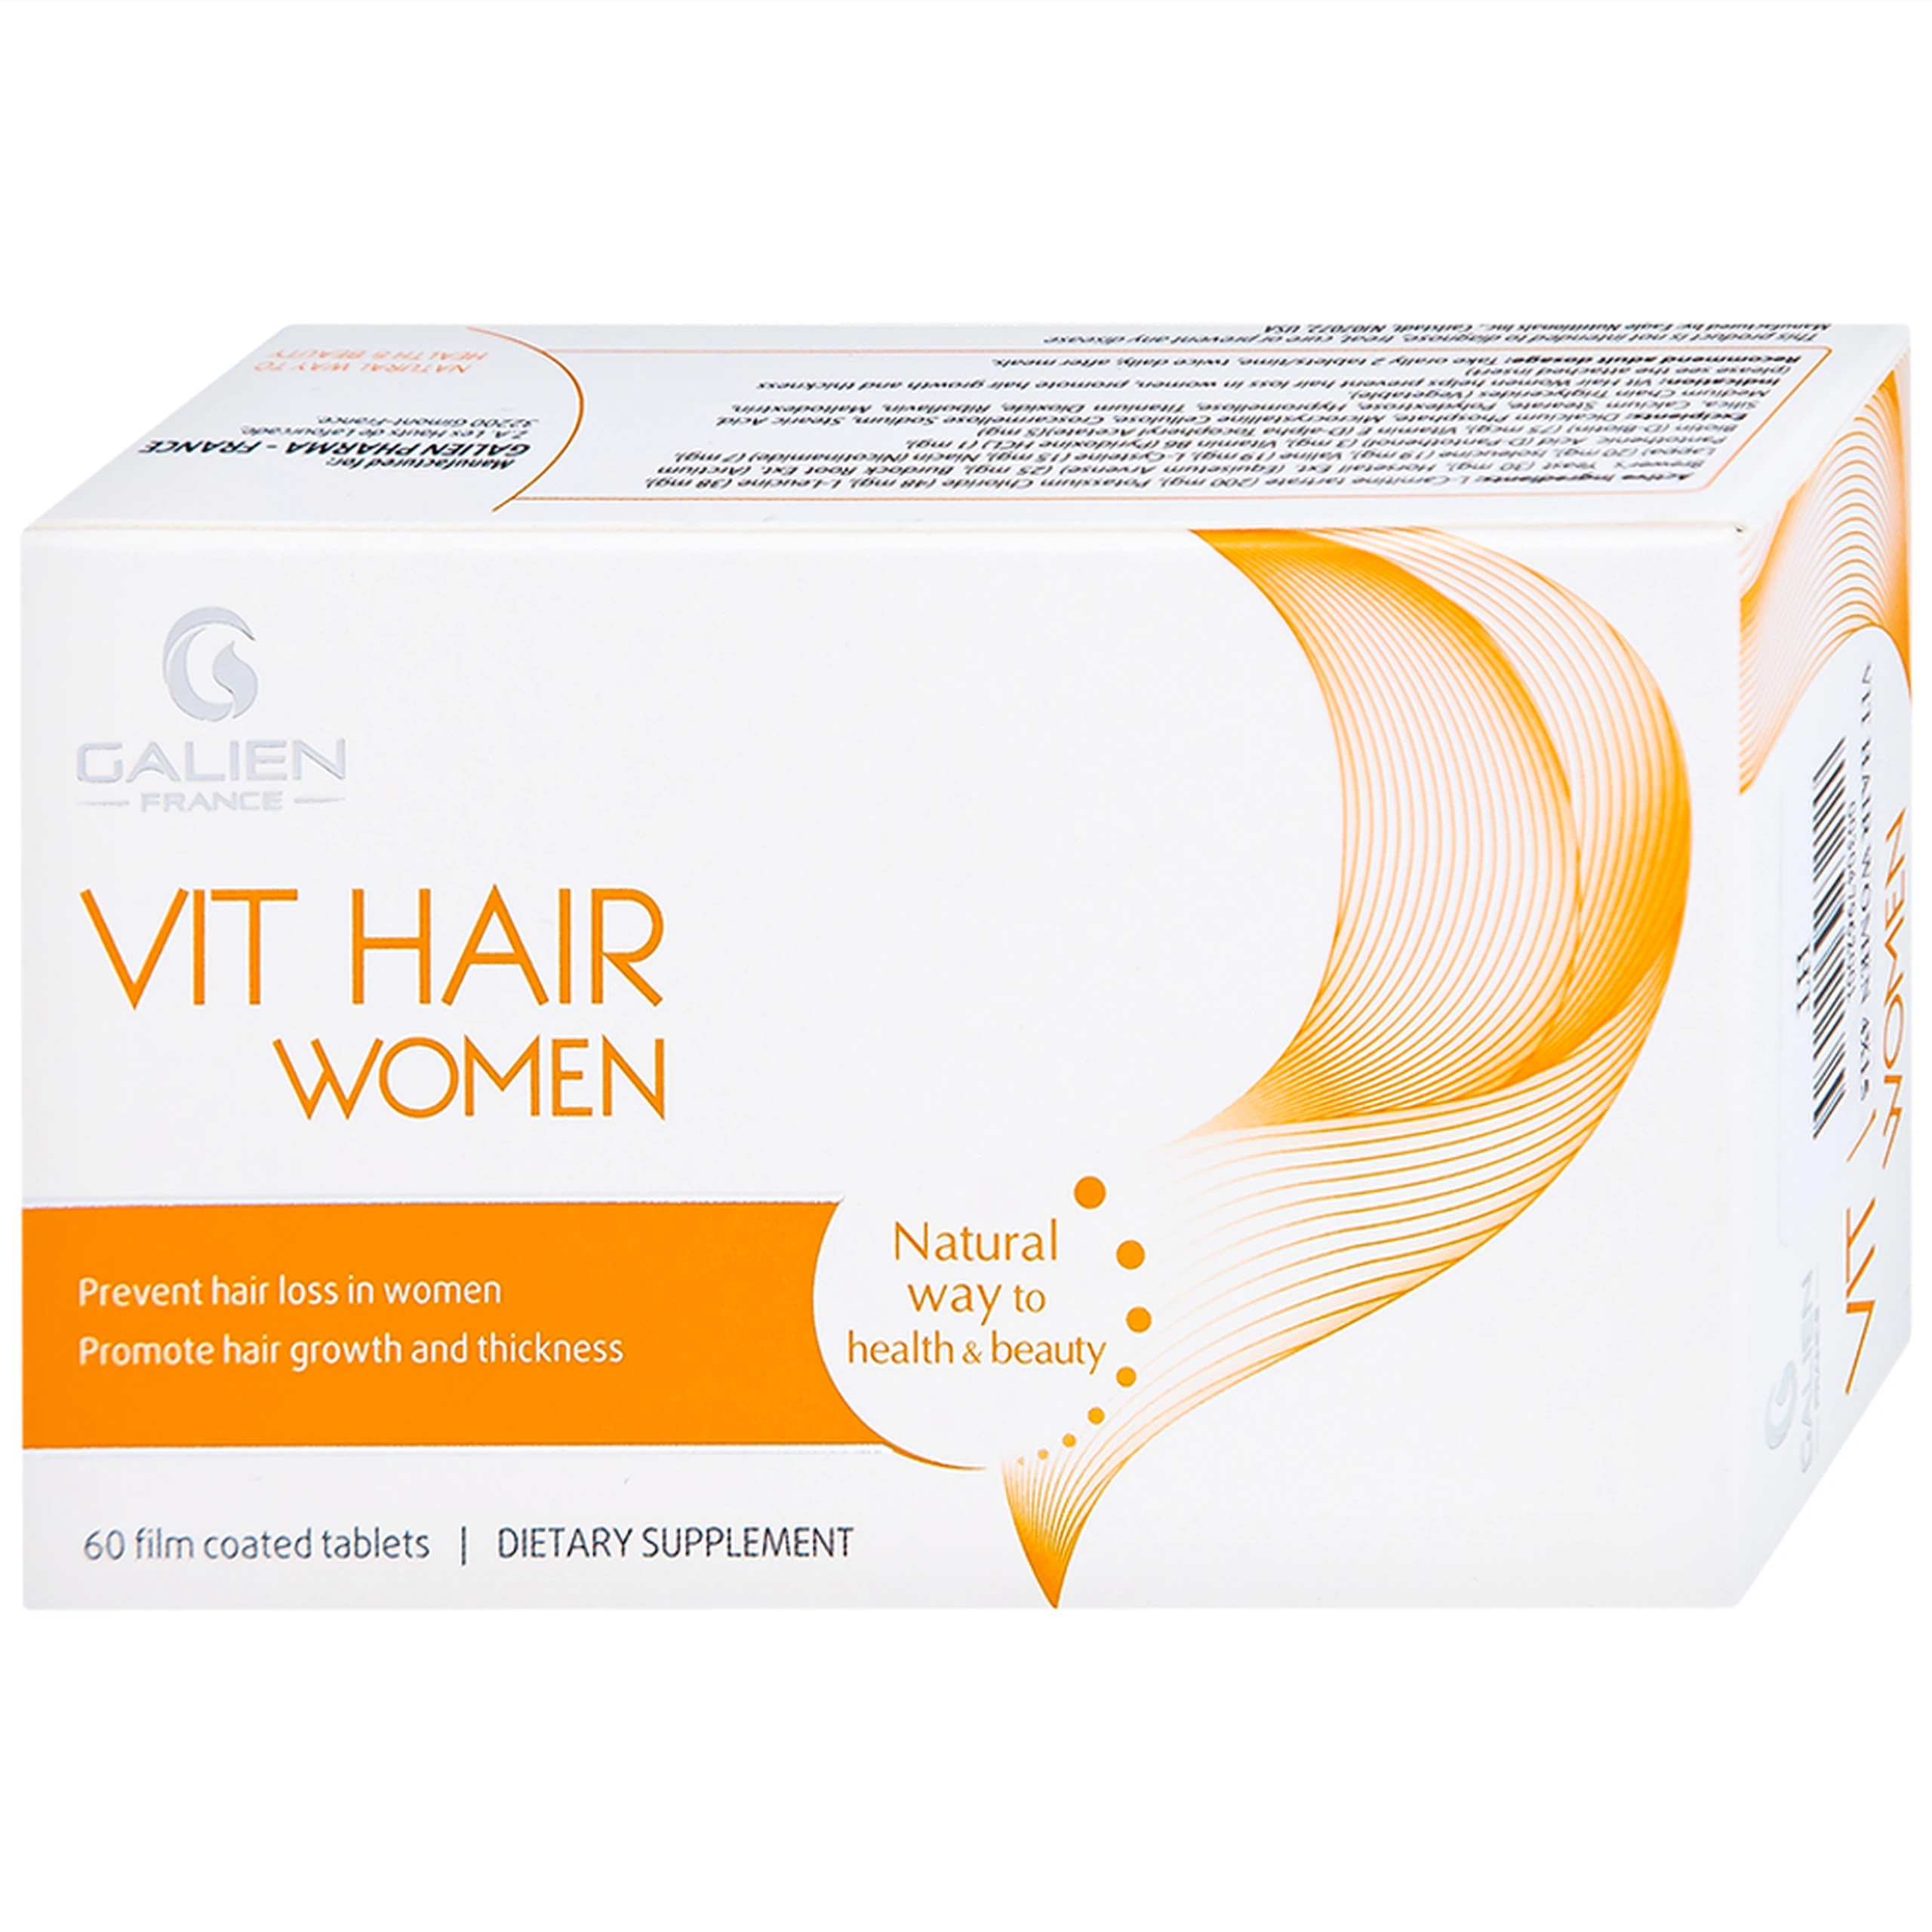 Viên uống Vit Hair Women Galien hỗ trợ giảm rụng tóc dành cho nữ giới (4 vỉ x 15 viên)